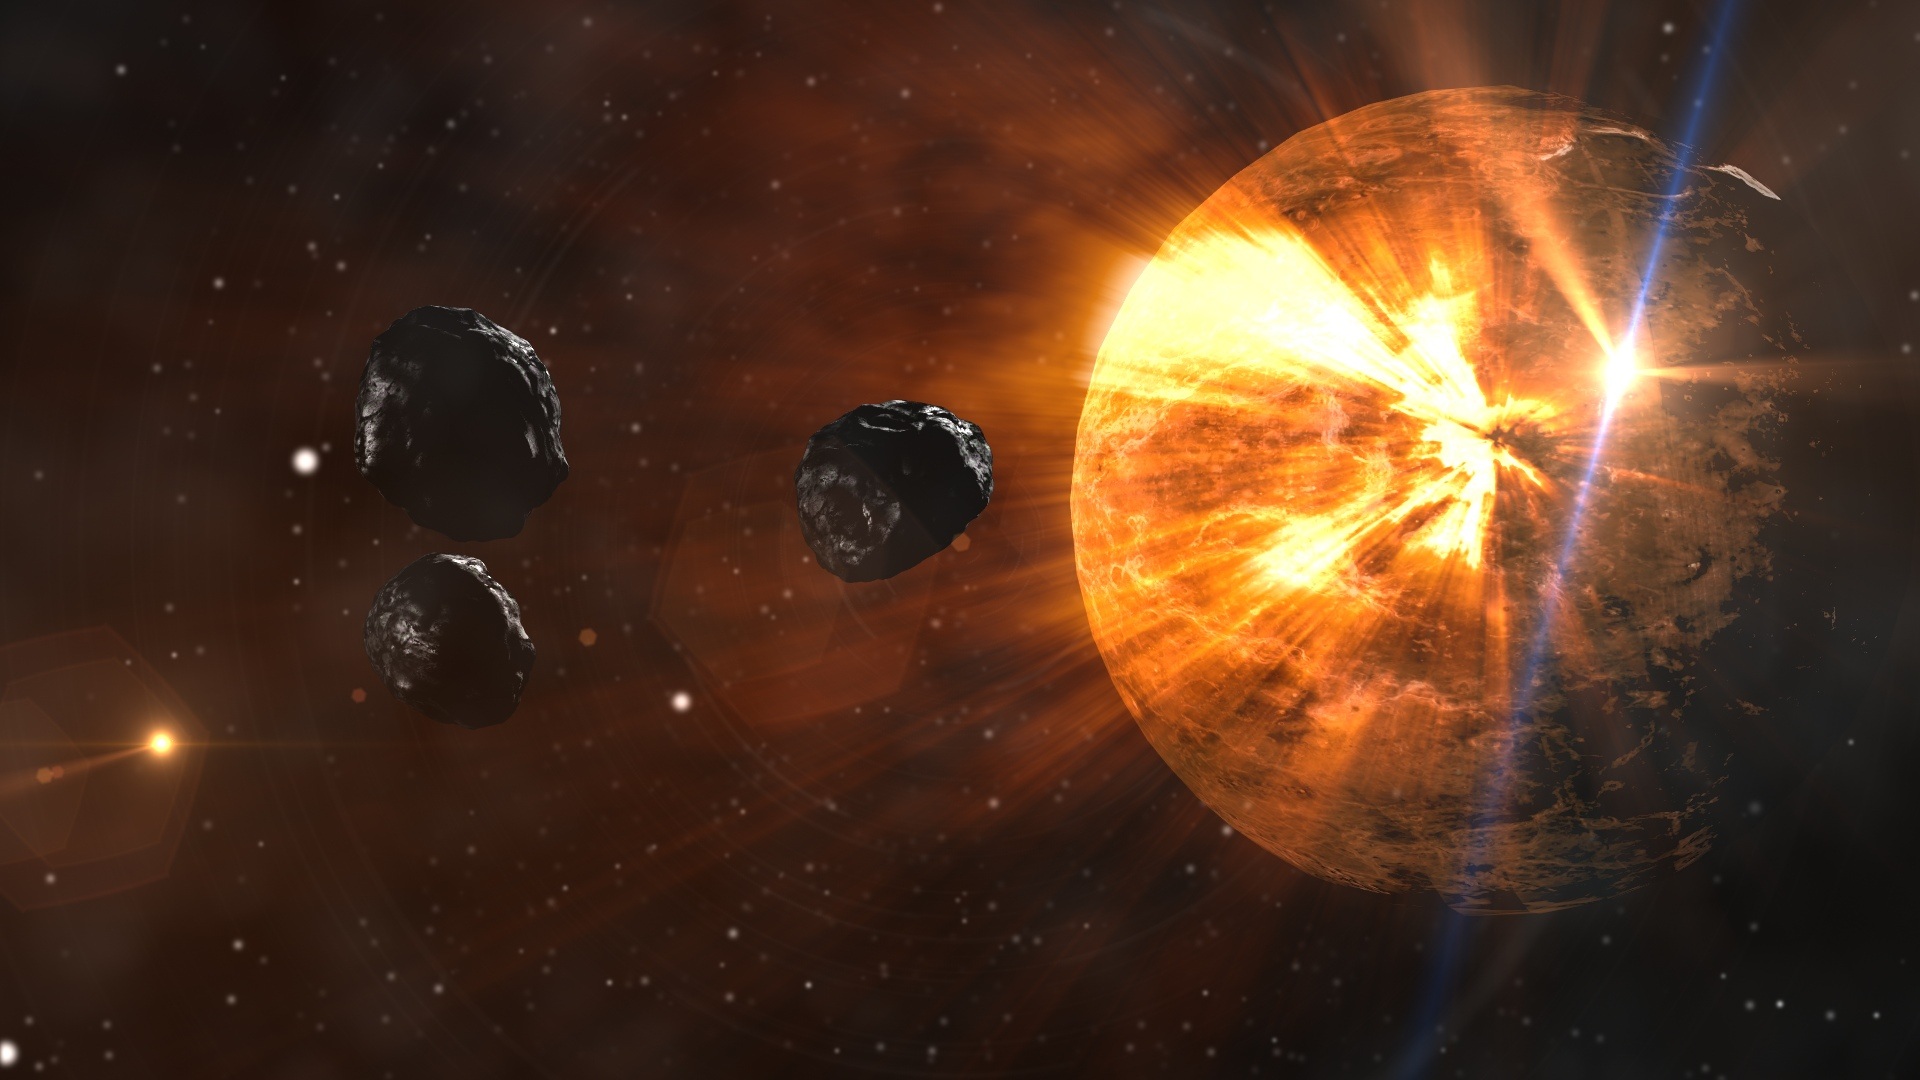 La Inteligencia Artificial descubre 11 nuevos asteroides peligrosos